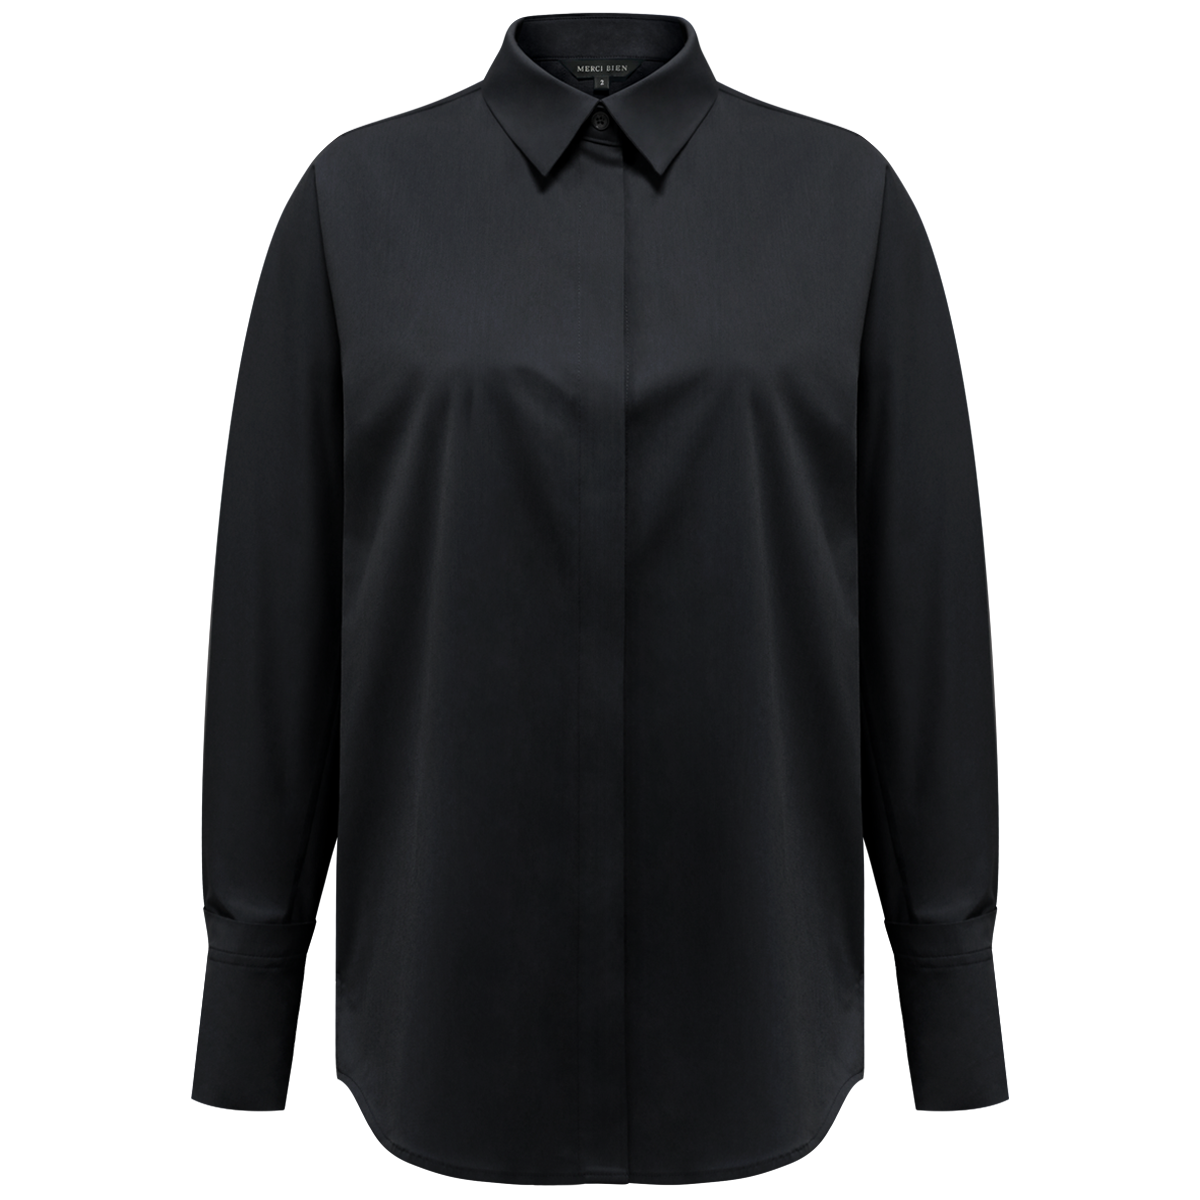 IBBI shirt plain (black)